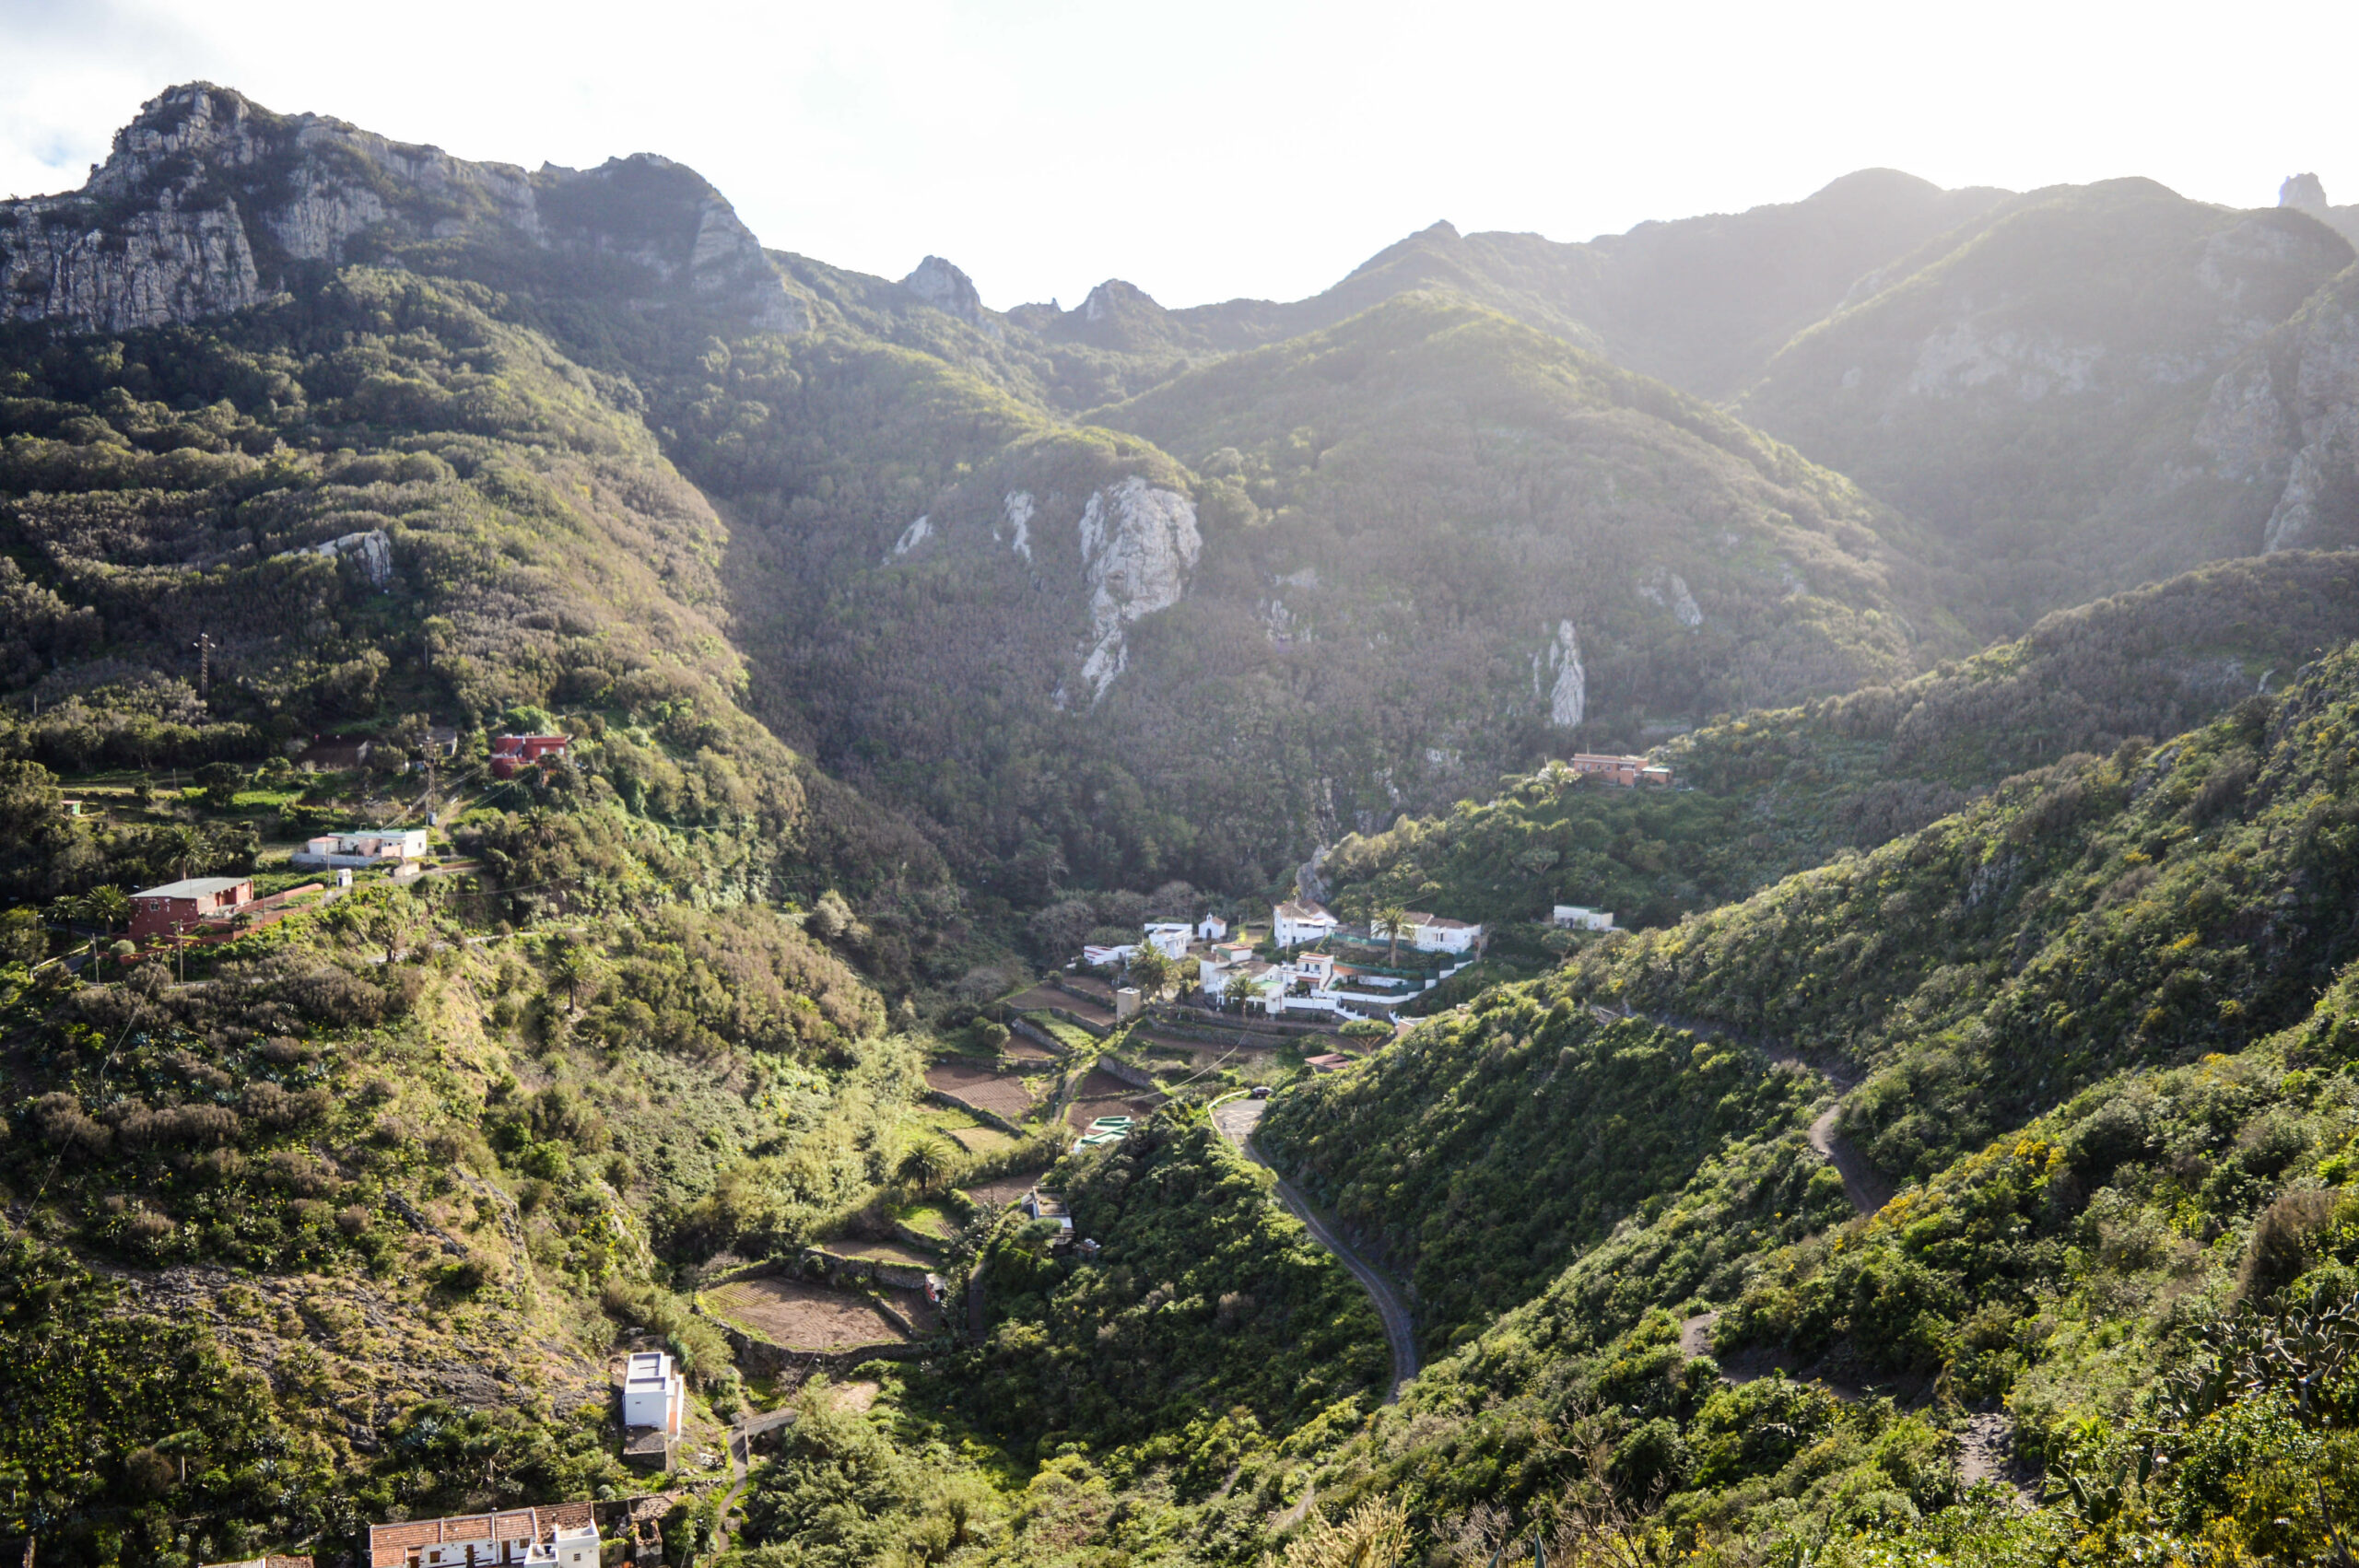 Vue sur le village de Chamorga, entouré des montagnes rocheuses et vertes de végétation